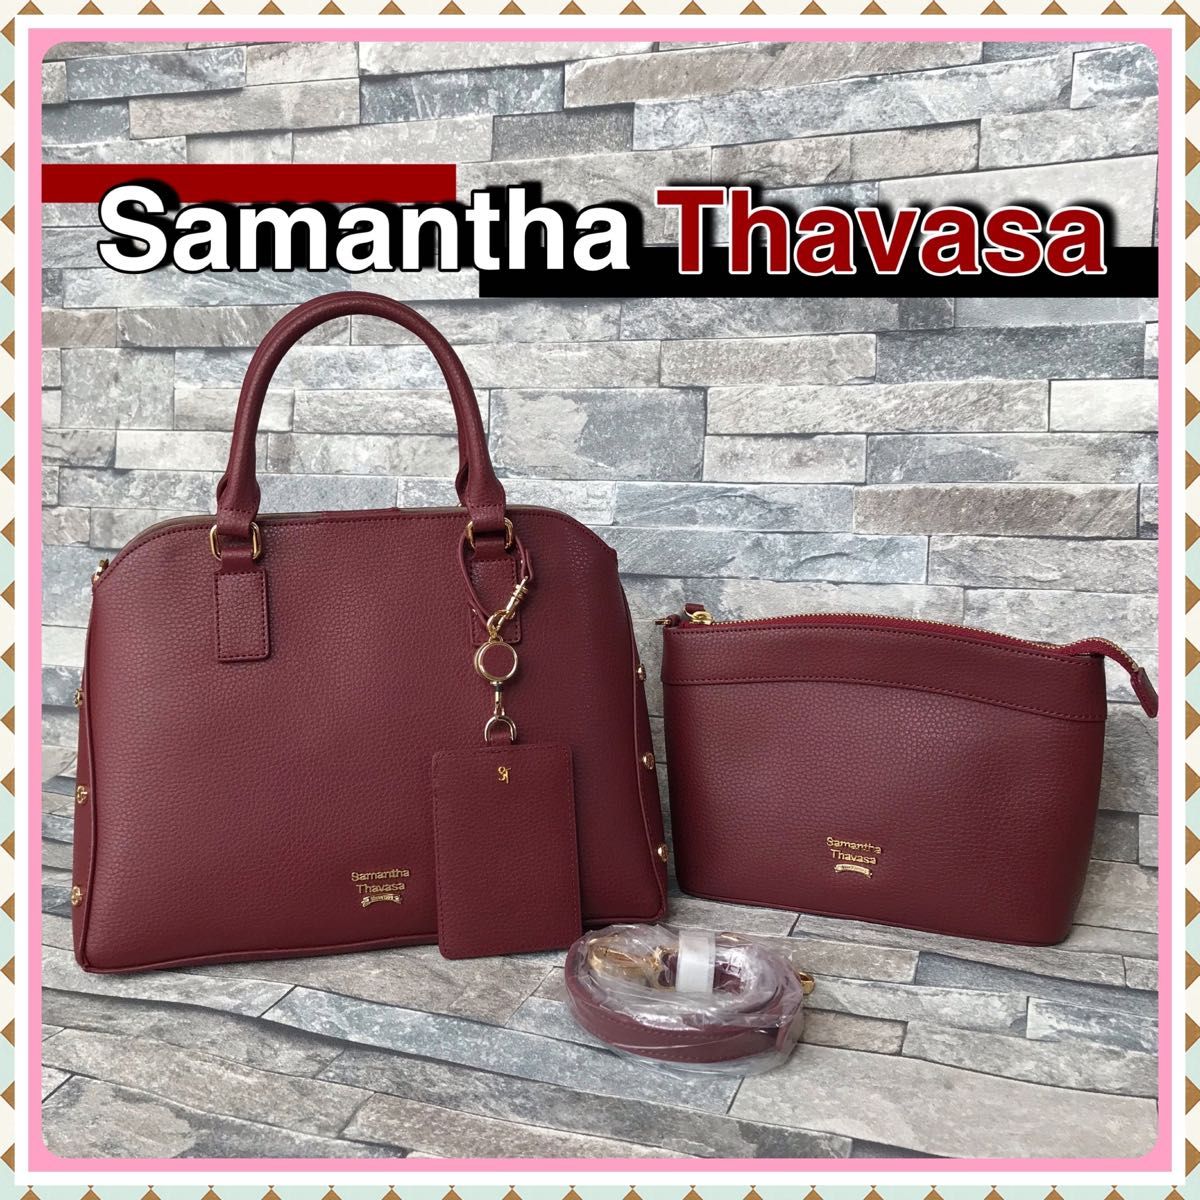 ◆◇◆ サマンサ タバサ バッグセット ショルダーバッグ ハンドバッグ